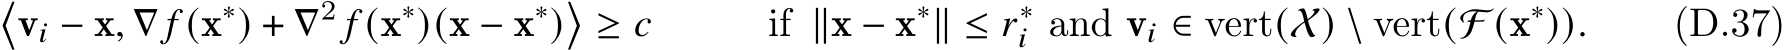 �v𝑖 − x, ∇ 𝑓 (x∗) + ∇2 𝑓 (x∗)(x − x∗)�≥ 𝑐 if ∥x − x∗∥ ≤ 𝑟∗𝑖 and v𝑖 ∈ vert(X) \ vert(F (x∗)). (D.37)